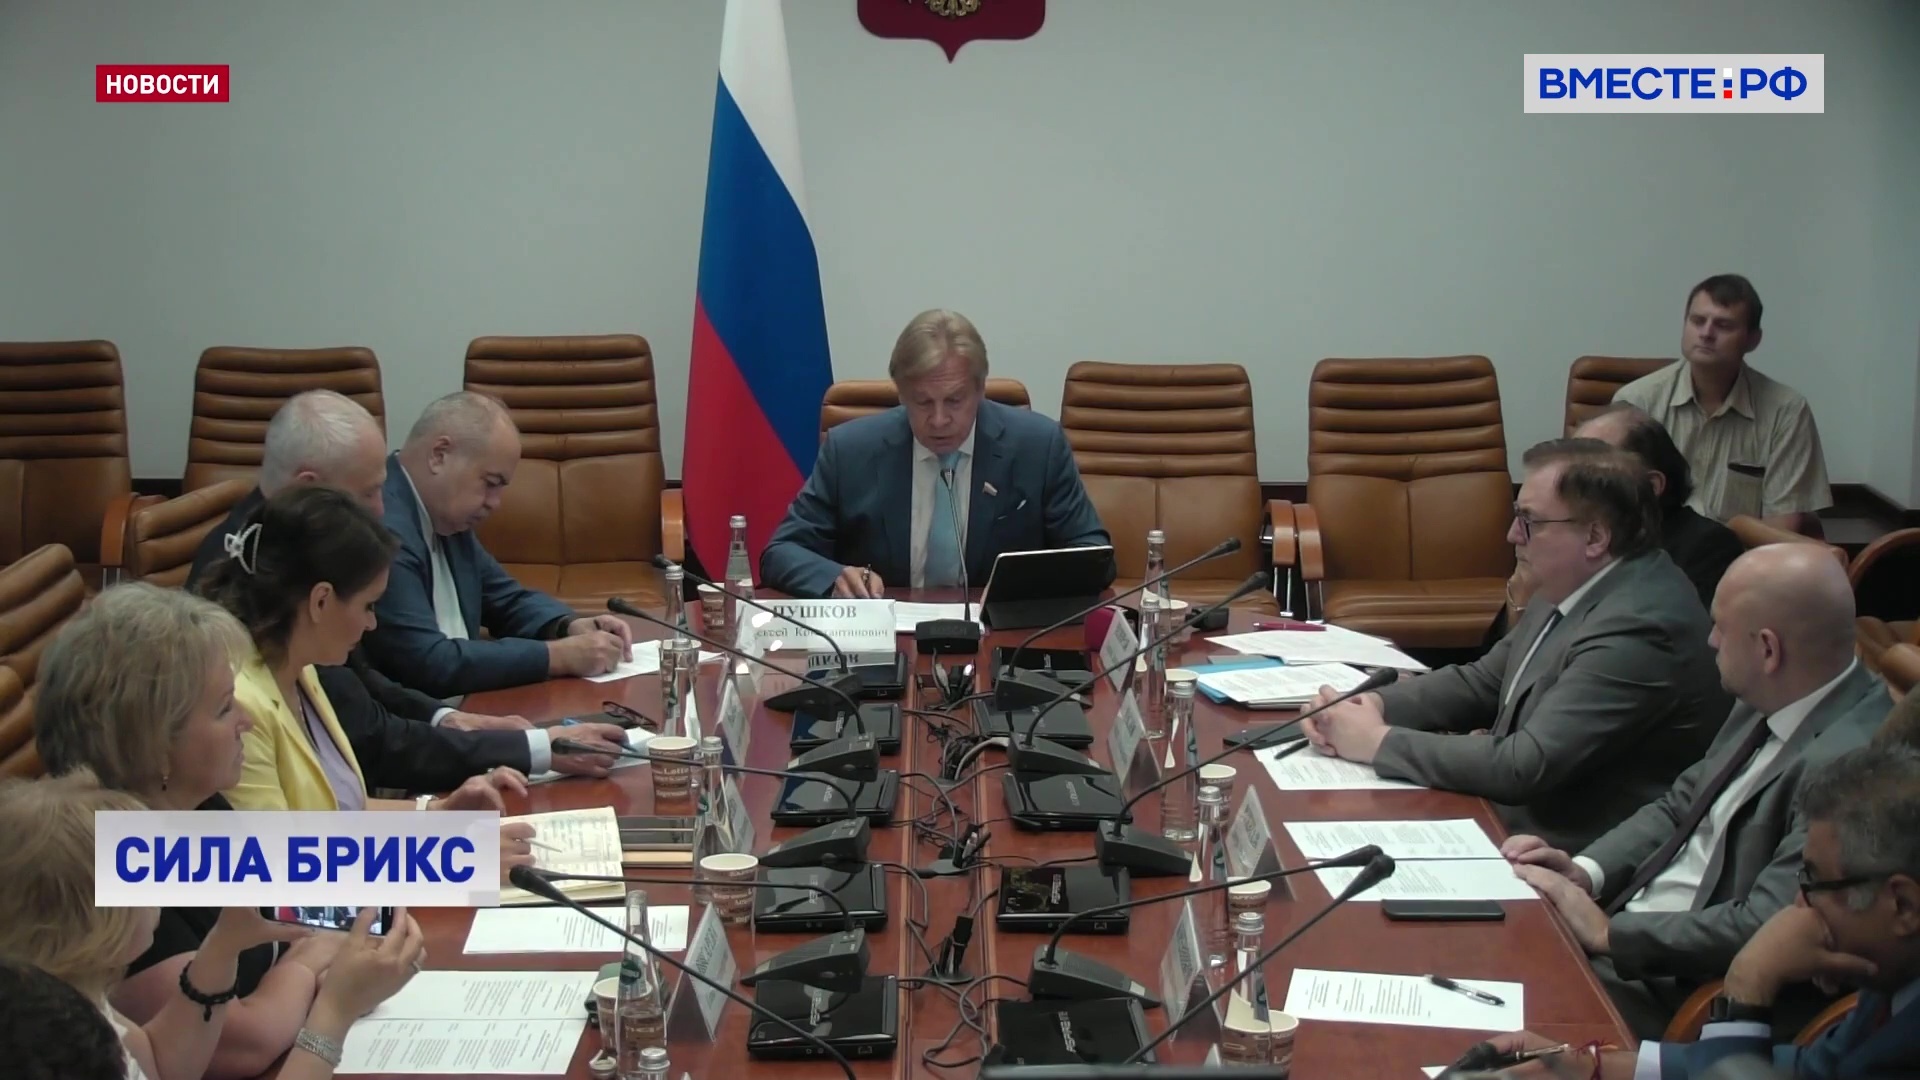 Сенатор Пушков предложил создать собственное информационное измерение стран БРИКС 